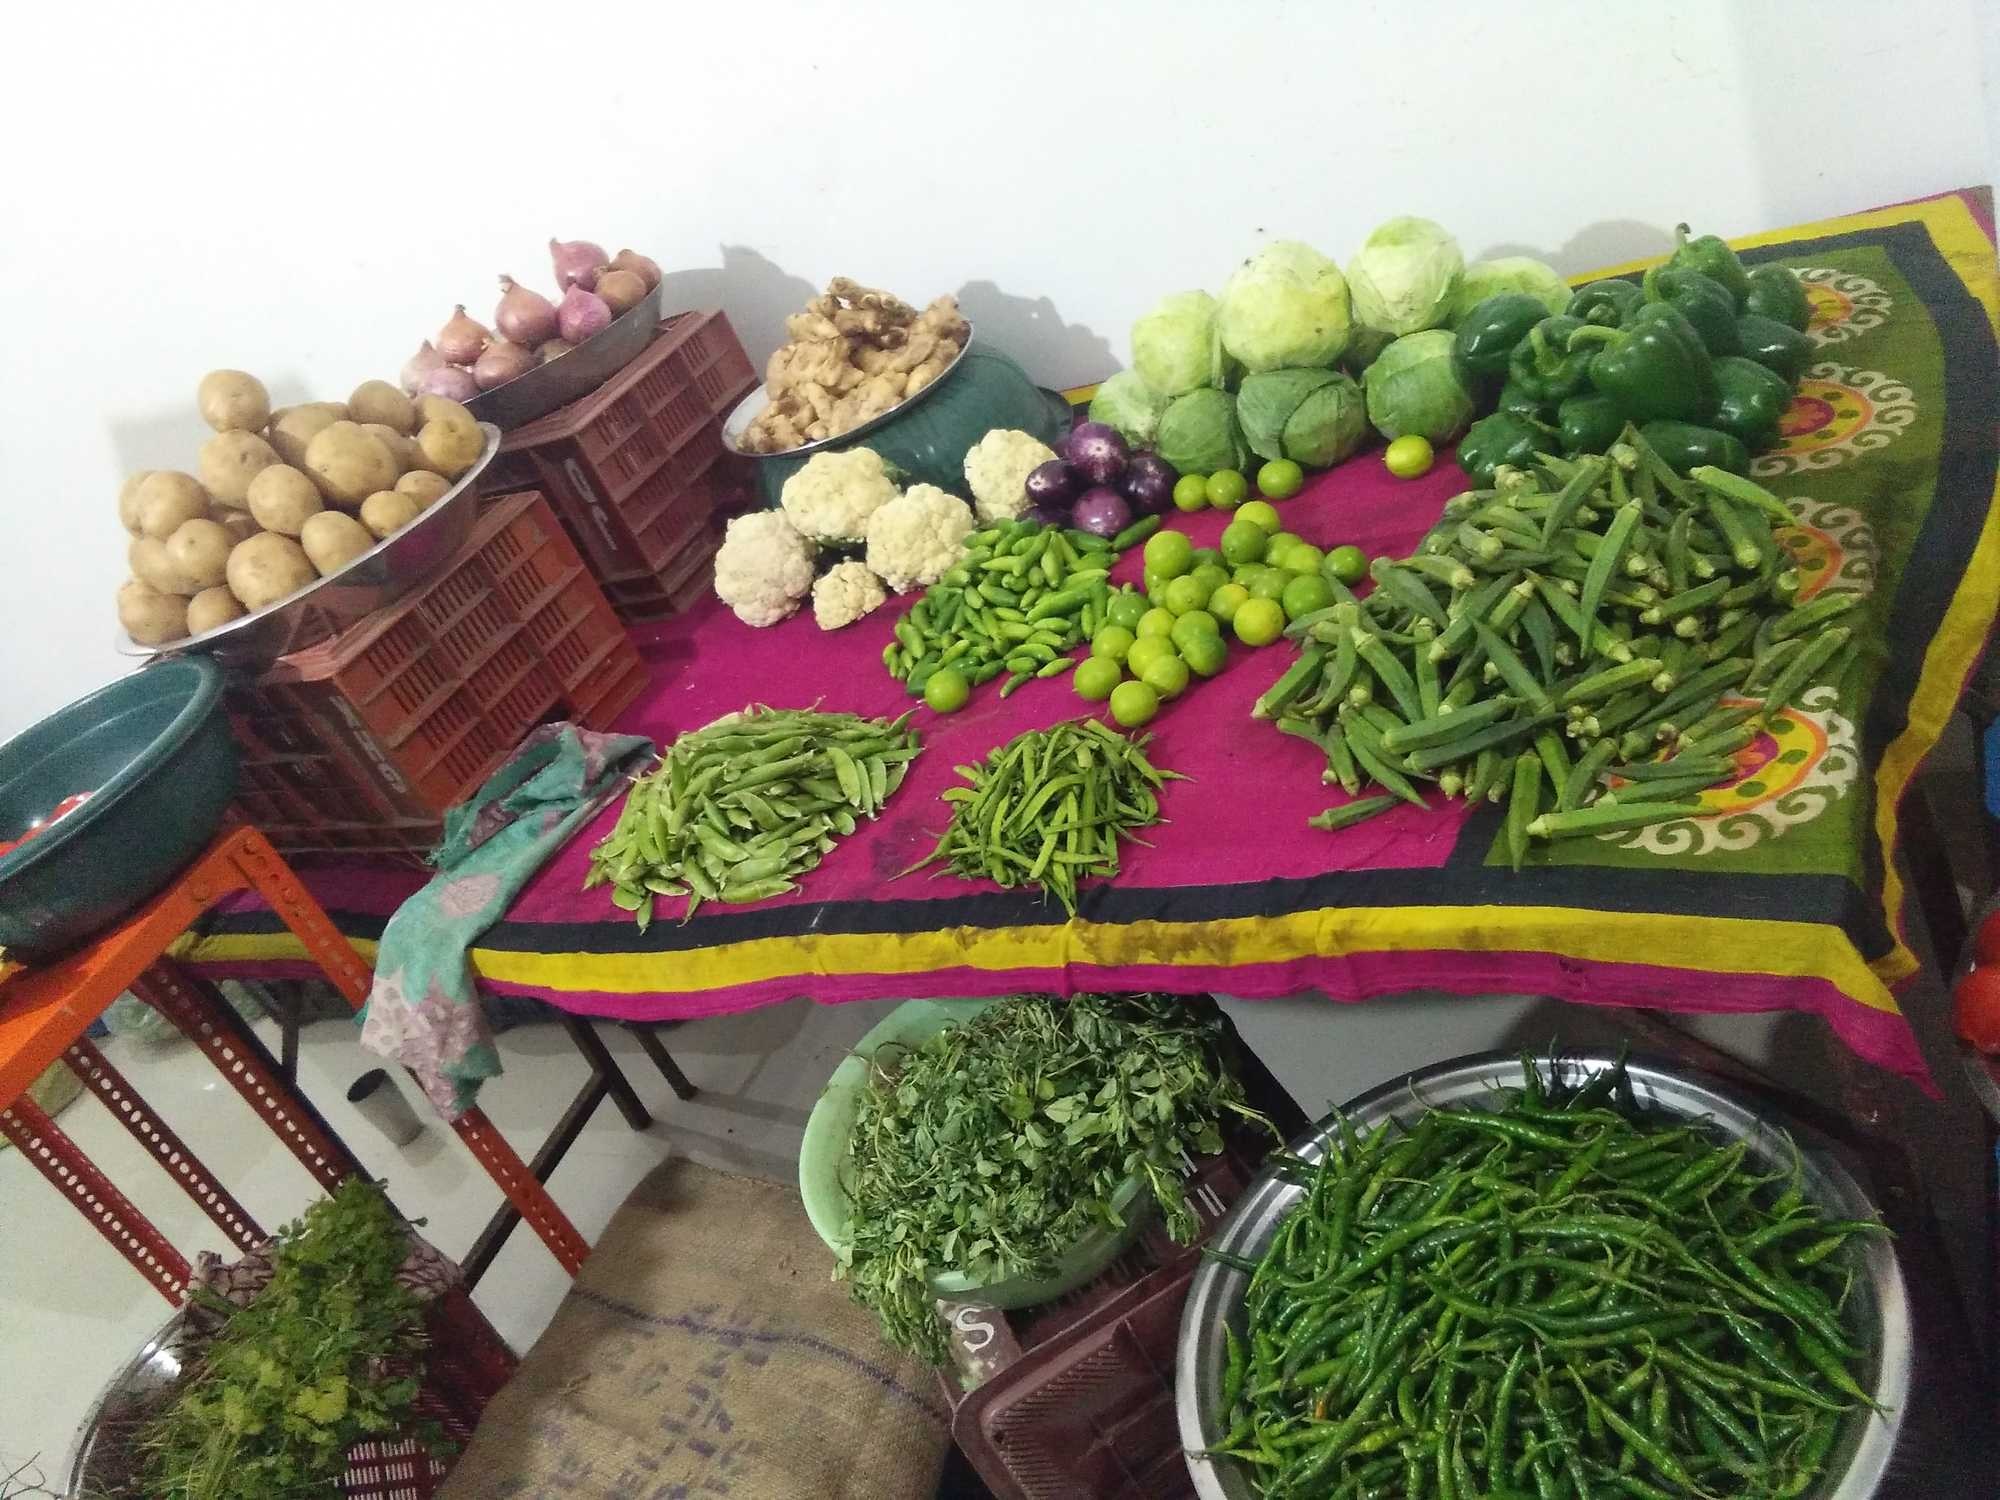 Vegetable vendors in Vadodara closed down their door to door services